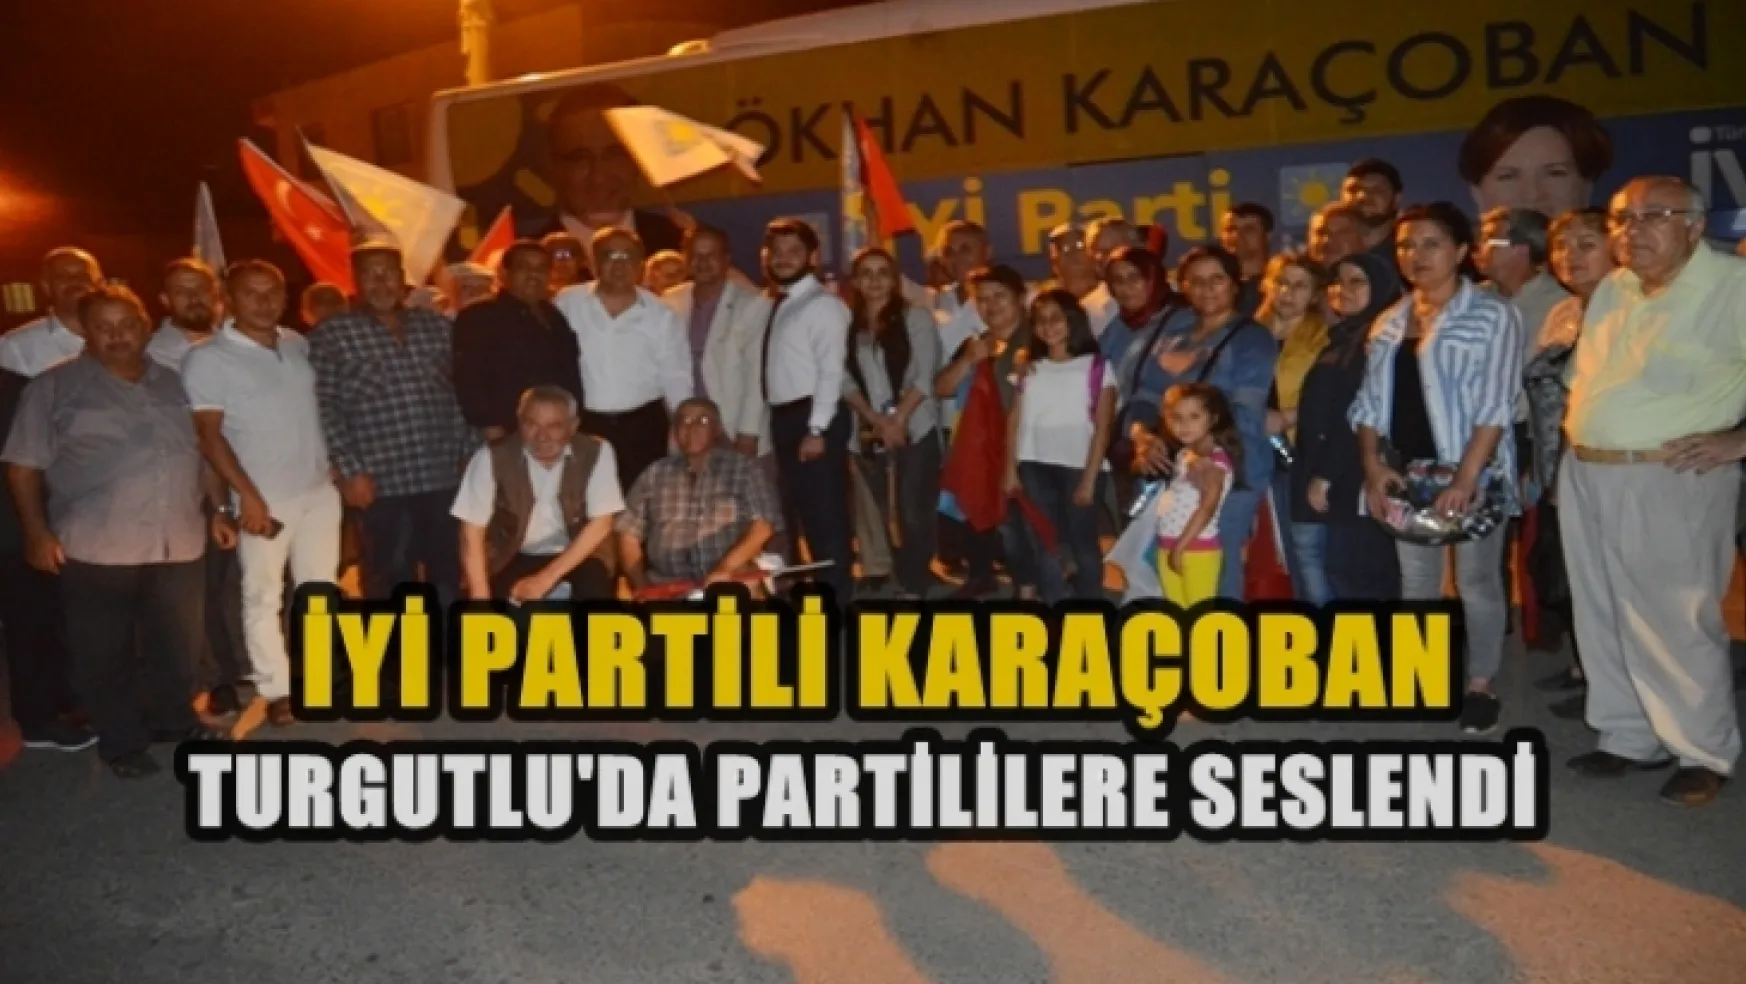 Karaçoban Turgutlu'da Partisine ve Kendisine oy istedi